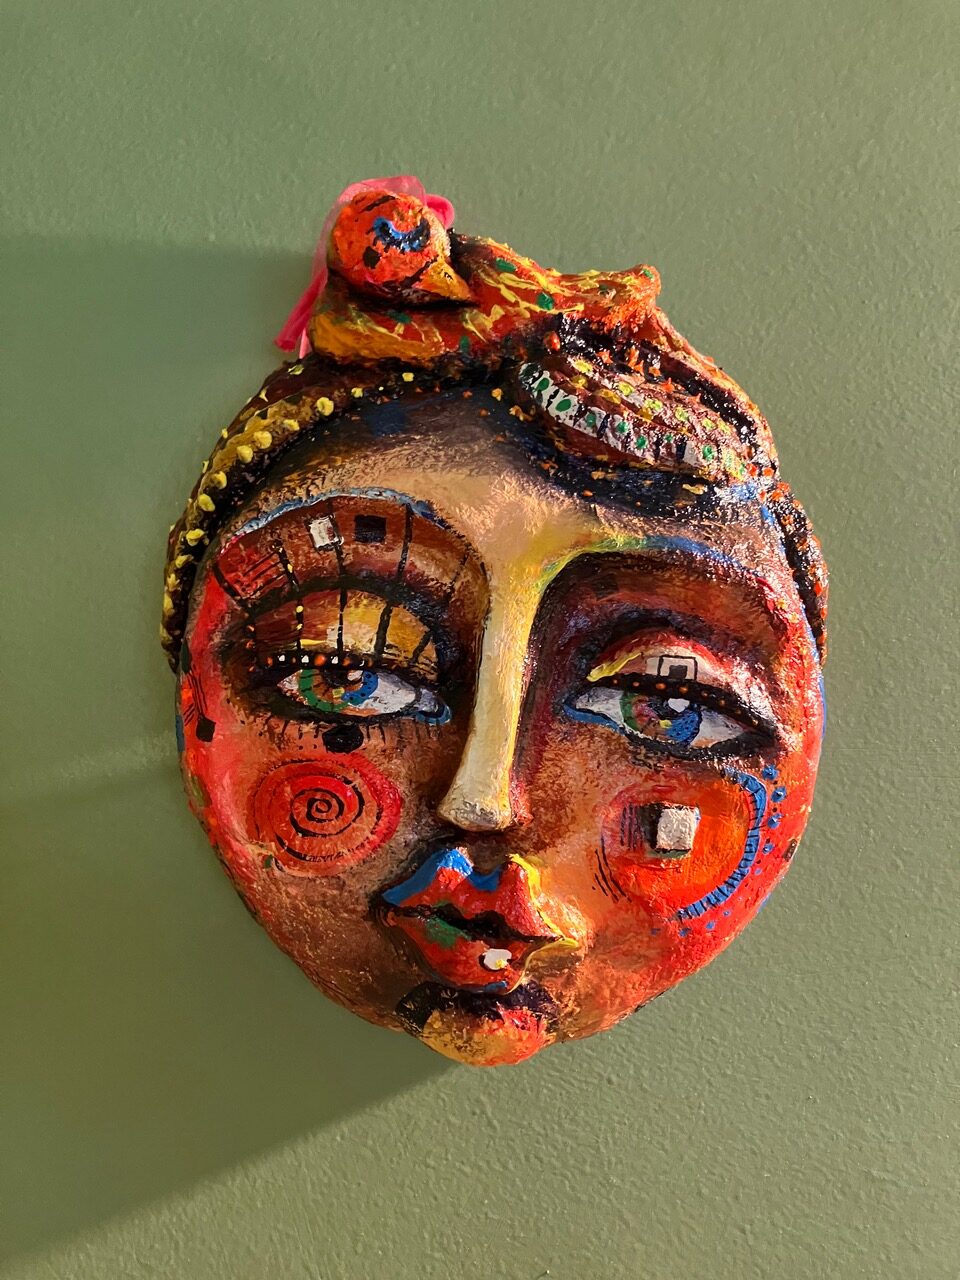 Maschera realizzata da Art Mess in pasta di legno e tessuto, dipinta con tecnica mista.